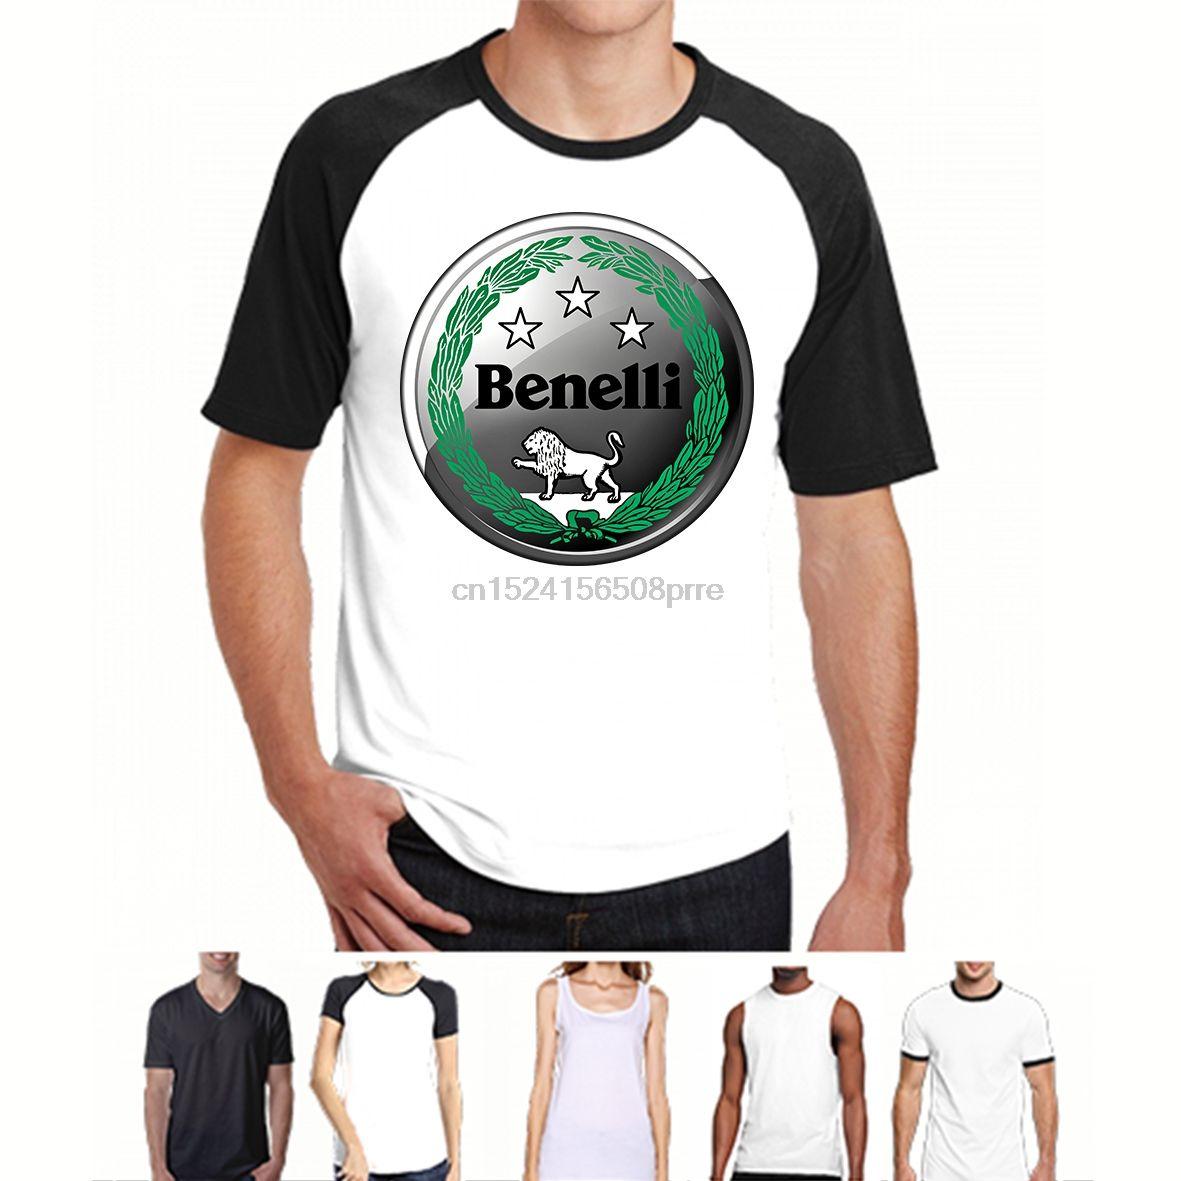 Benelli Firearms Logo - New Benelli Gun Firearms Logo Men/'s Black T Shirt Size S To 3XL